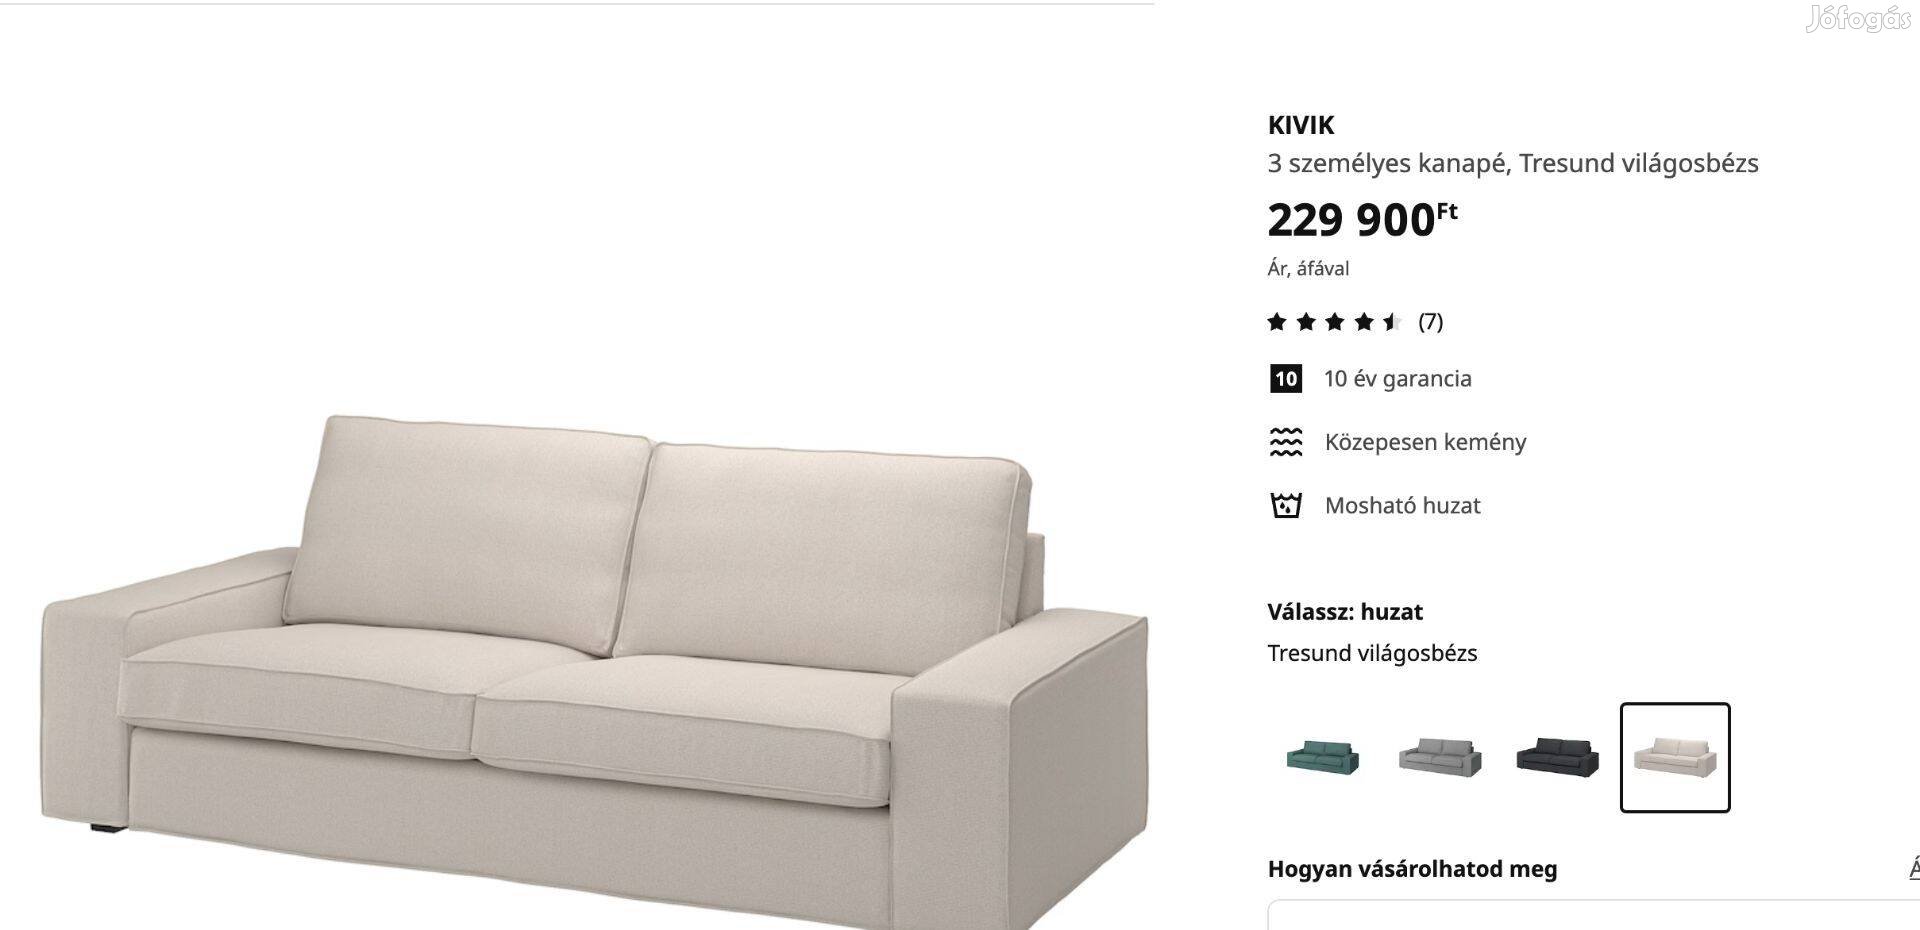 Ikea kivik 3 személyes kanapé